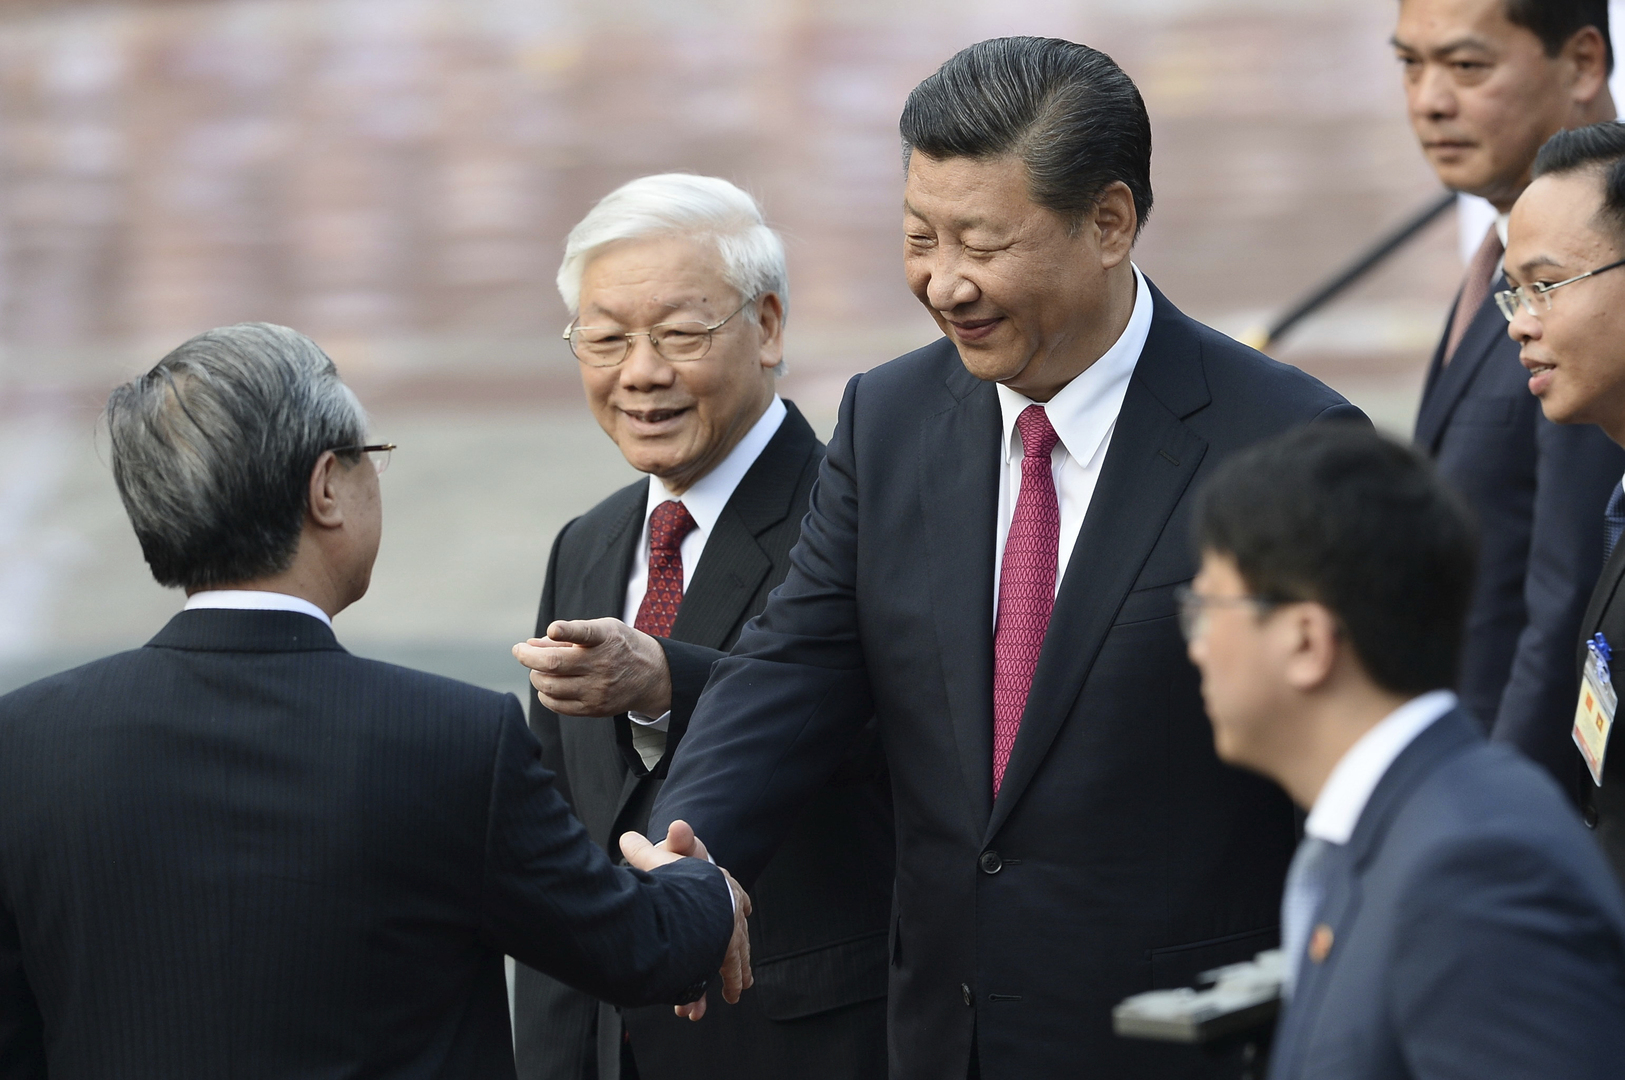 الرئيس الصيني يصل إلى فيتنام في زيارة دولة